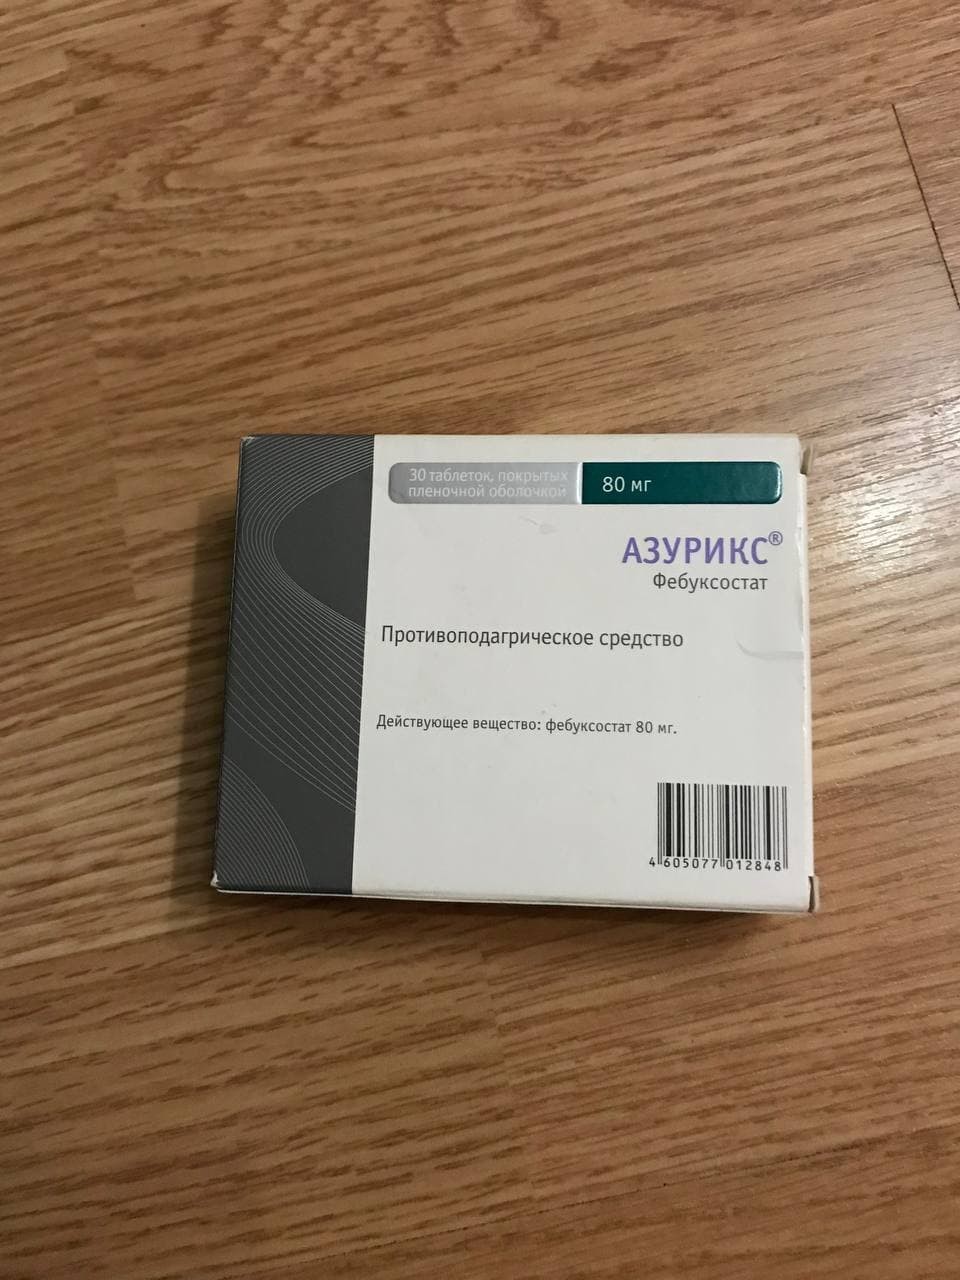 Азурикс - Замена Аллопуринолу